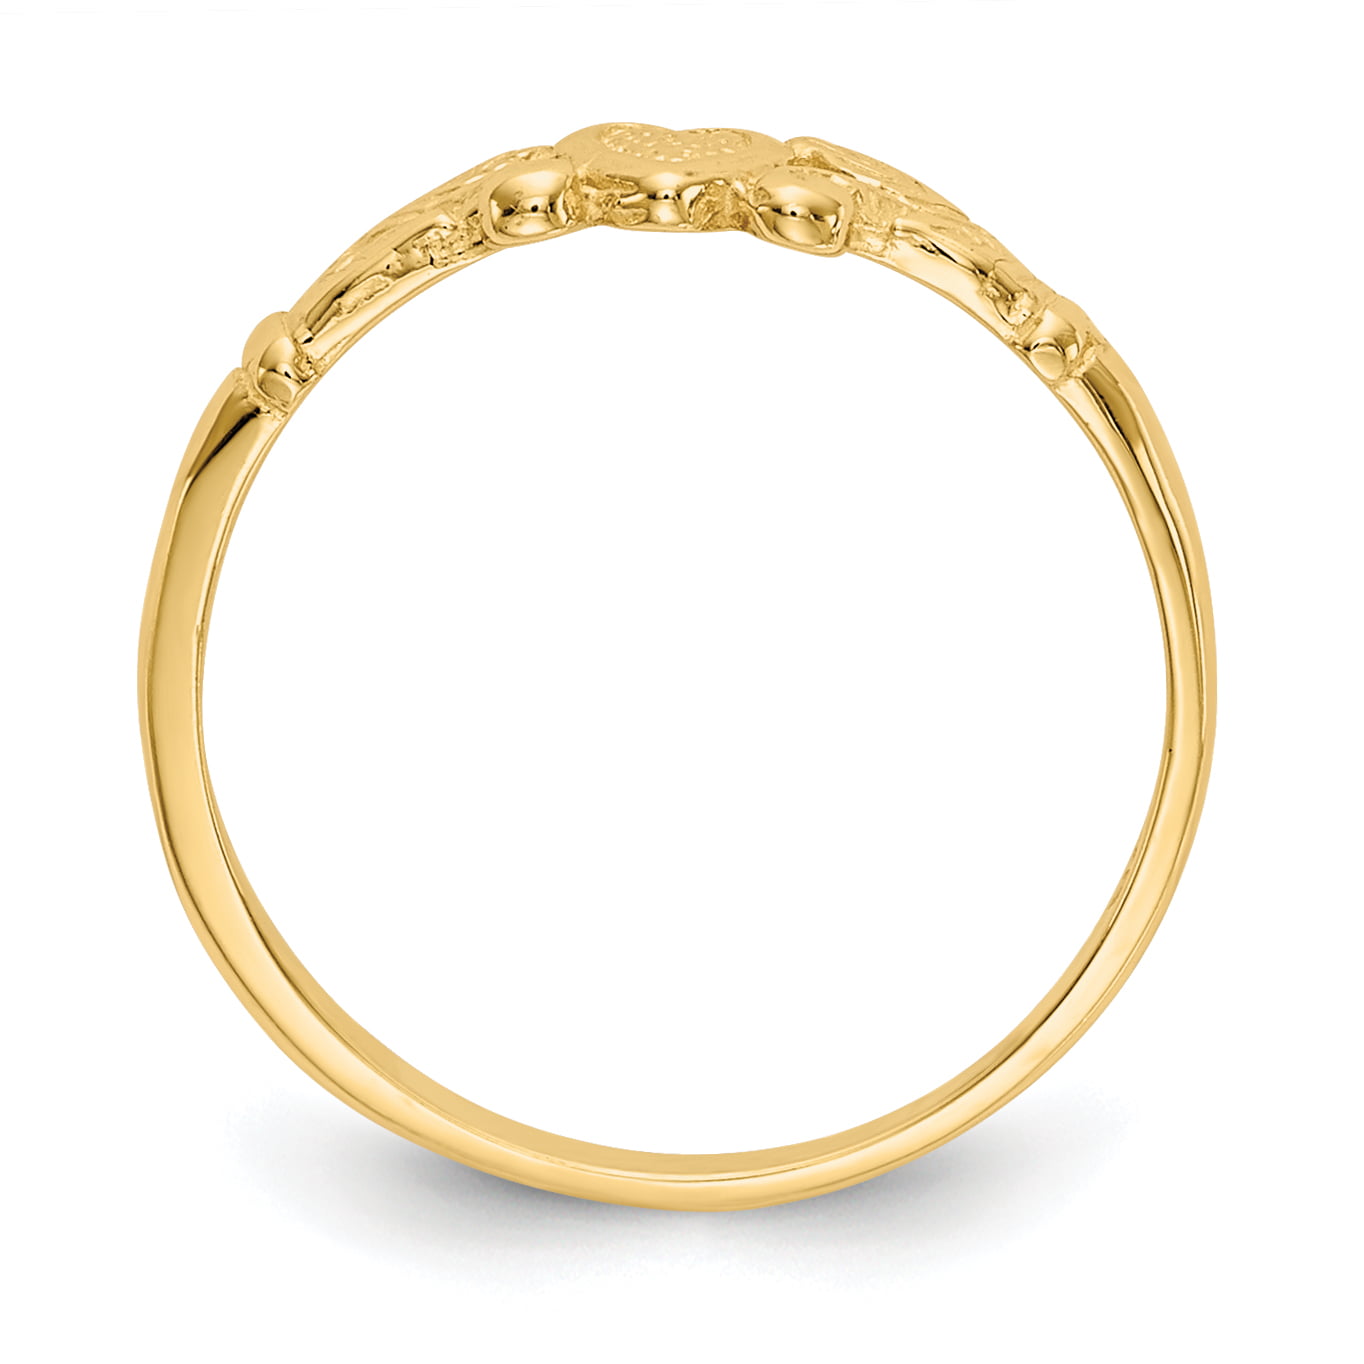 Leheriya Art Gold Ring